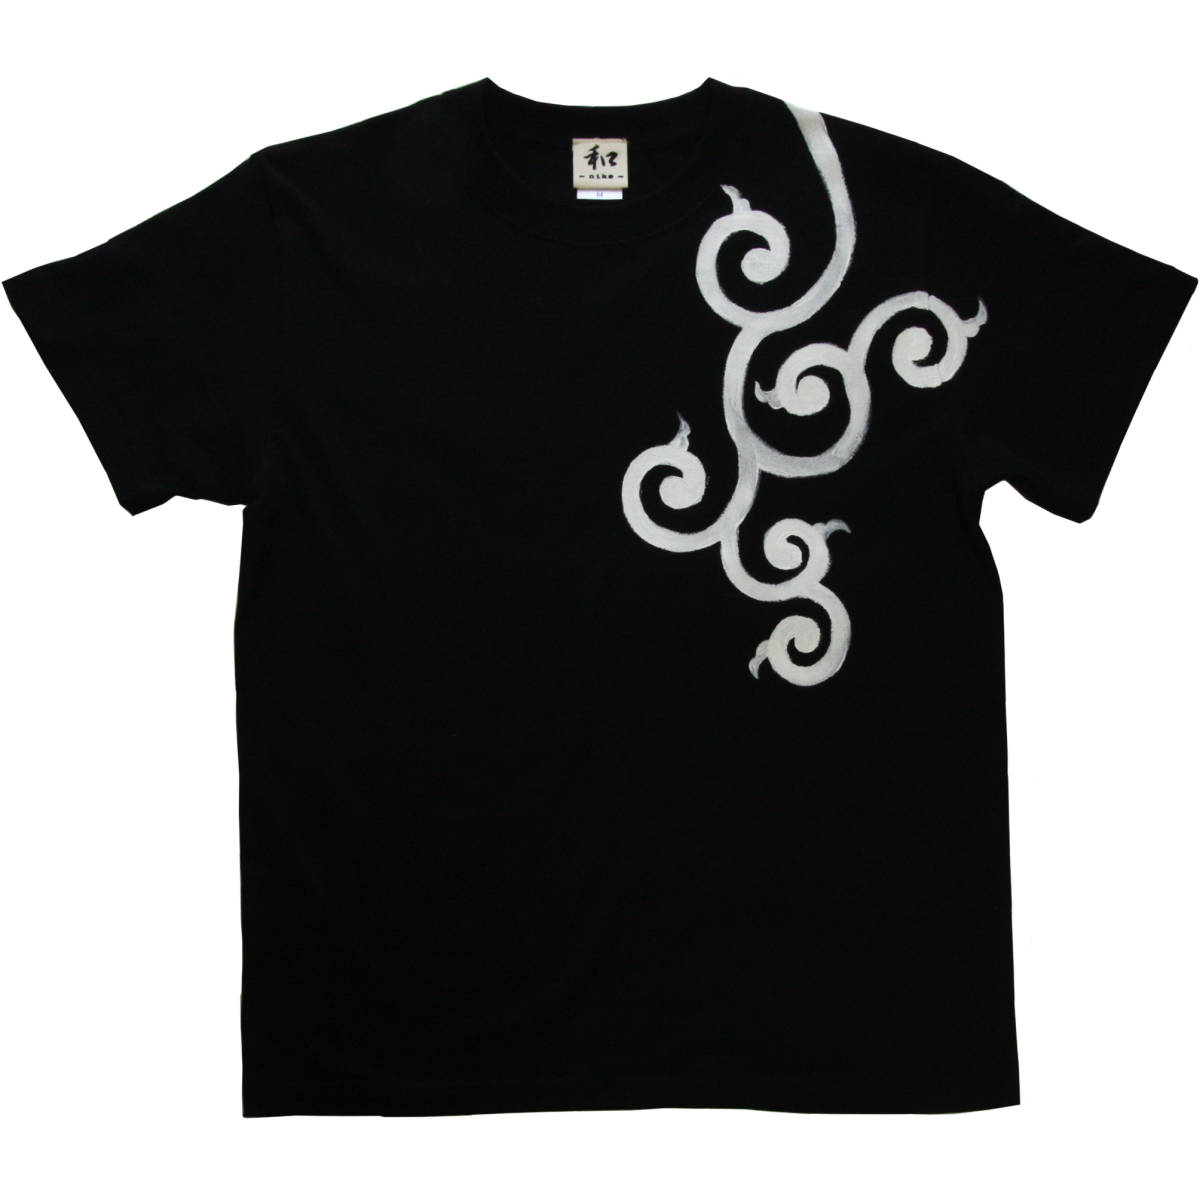 Herren-T-Shirt, Größe M, Schwarz, T-Shirt mit Arabesken-Muster, Schwarz, handgefertigt, handgezeichnetes T-Shirt, Japanisches Muster, Mittlere Größe, Rundhals, Gemustert